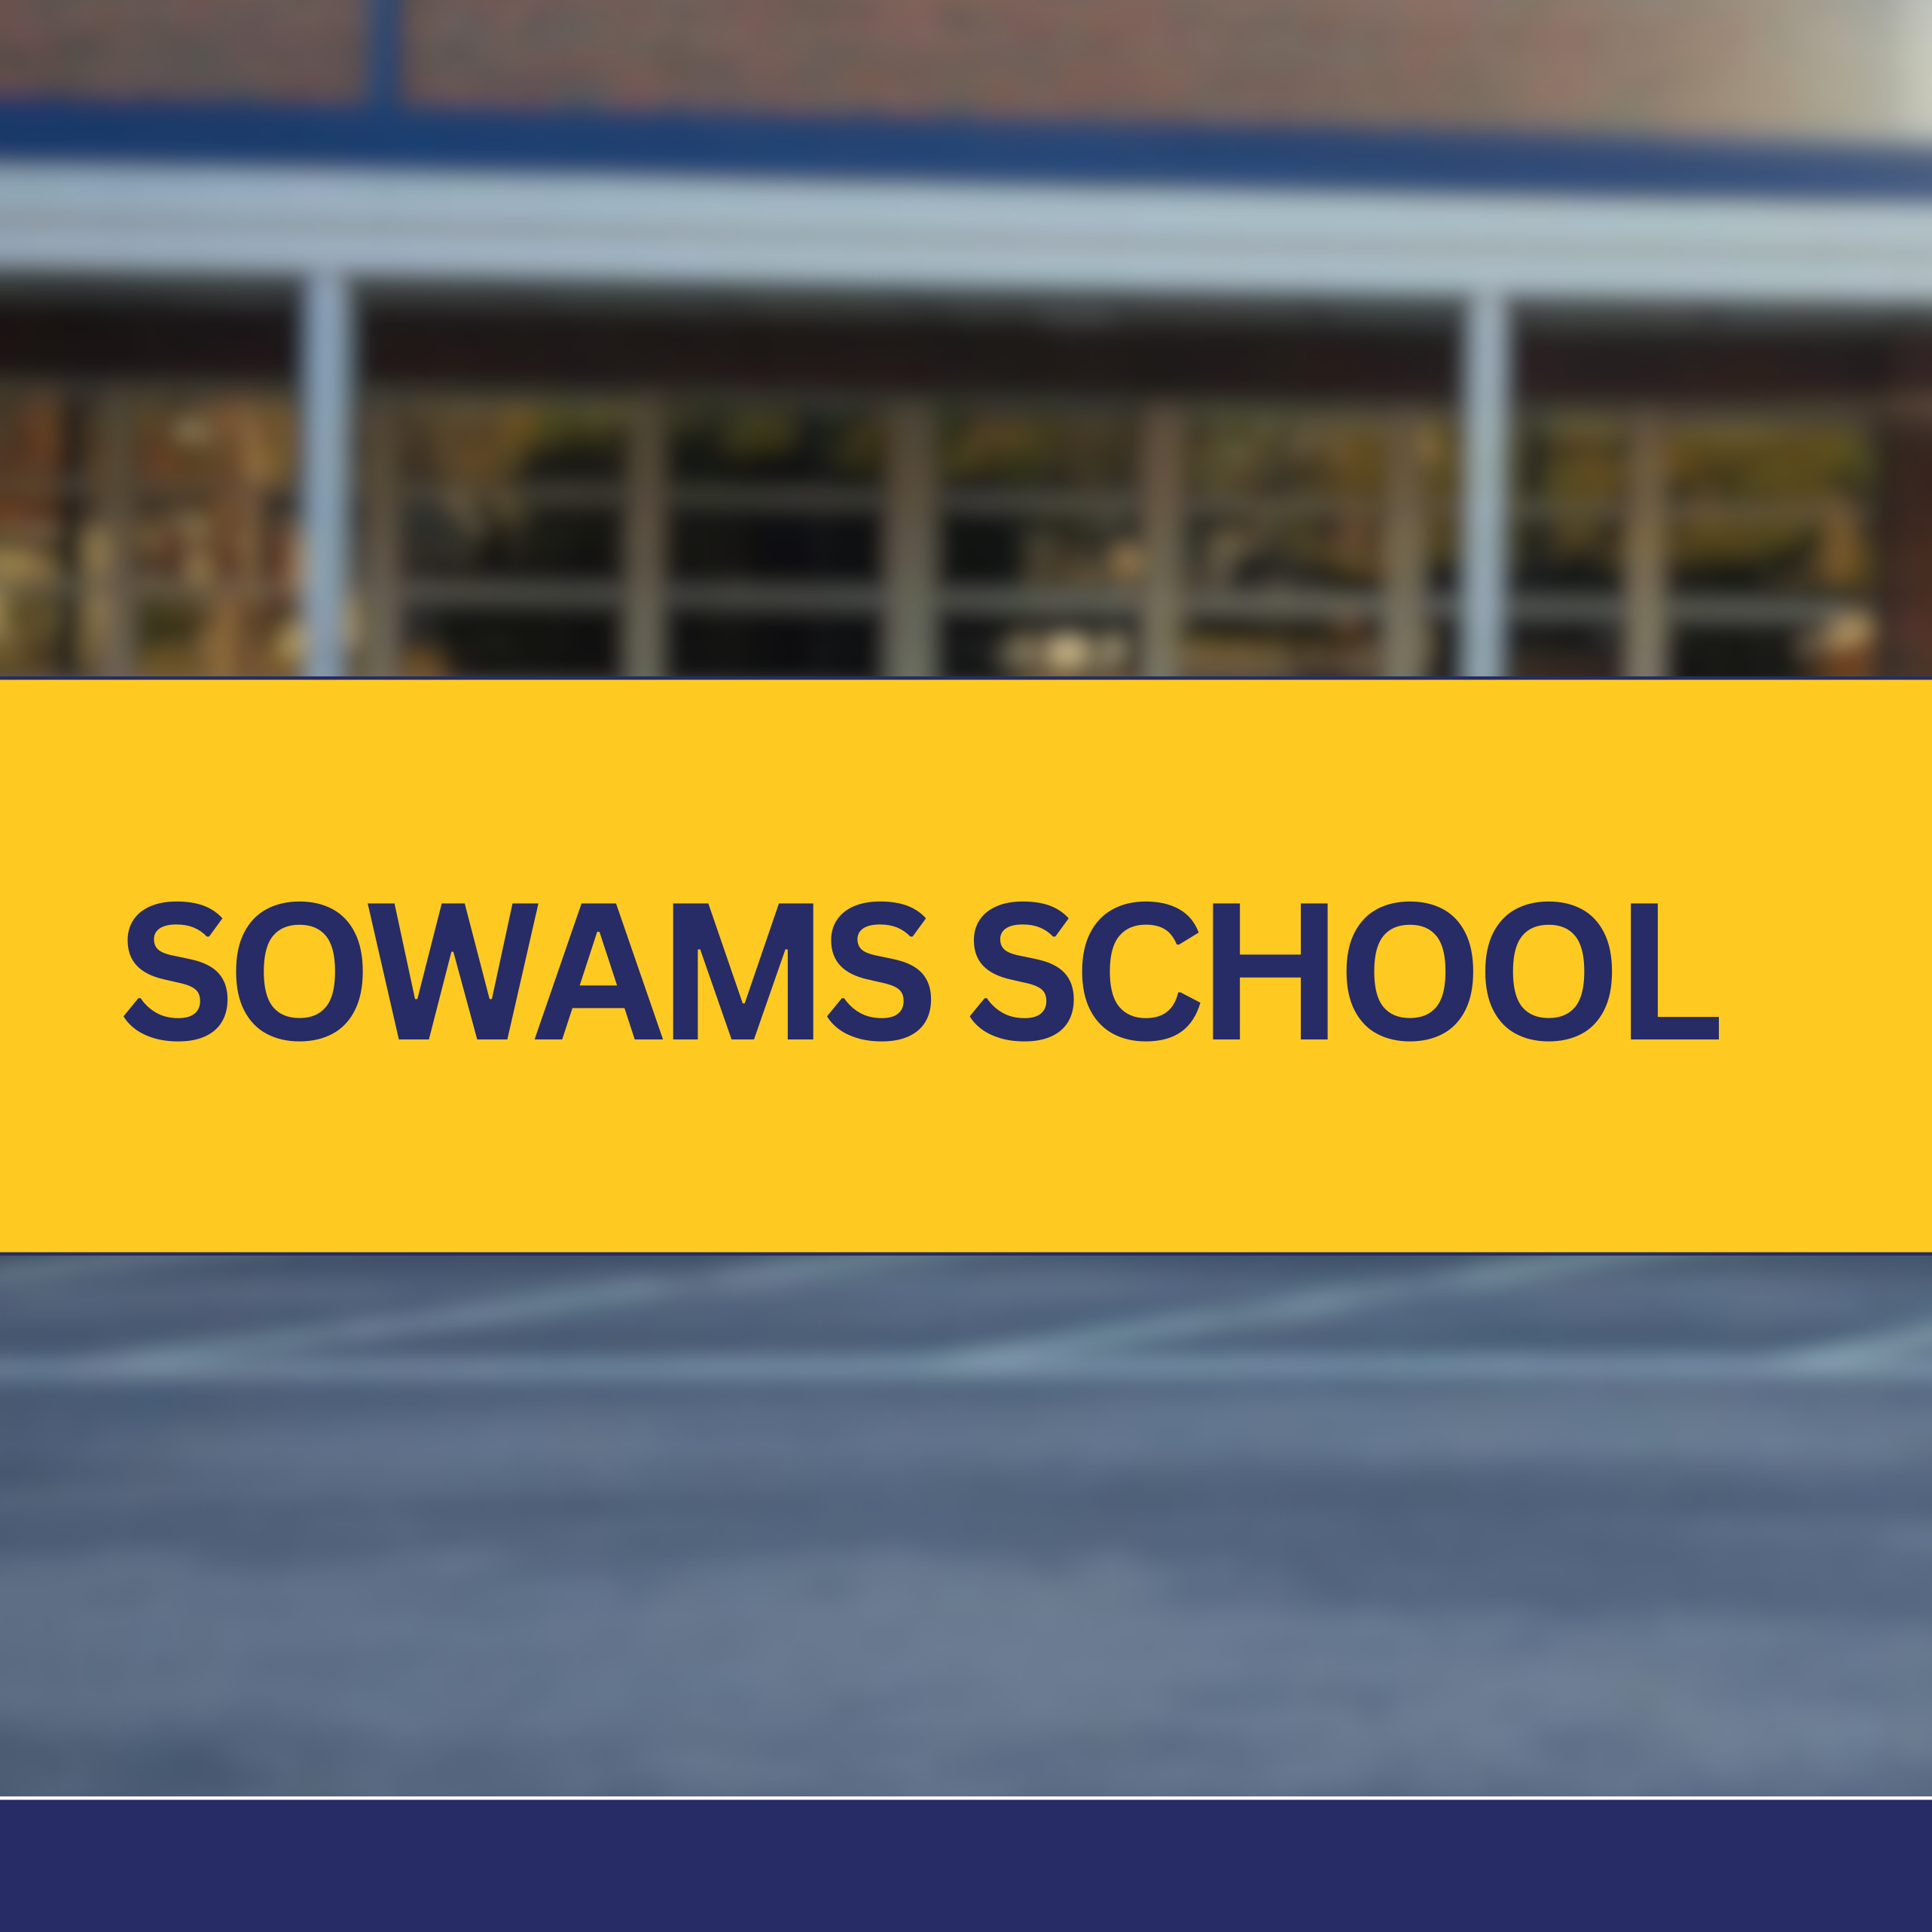 sowams school